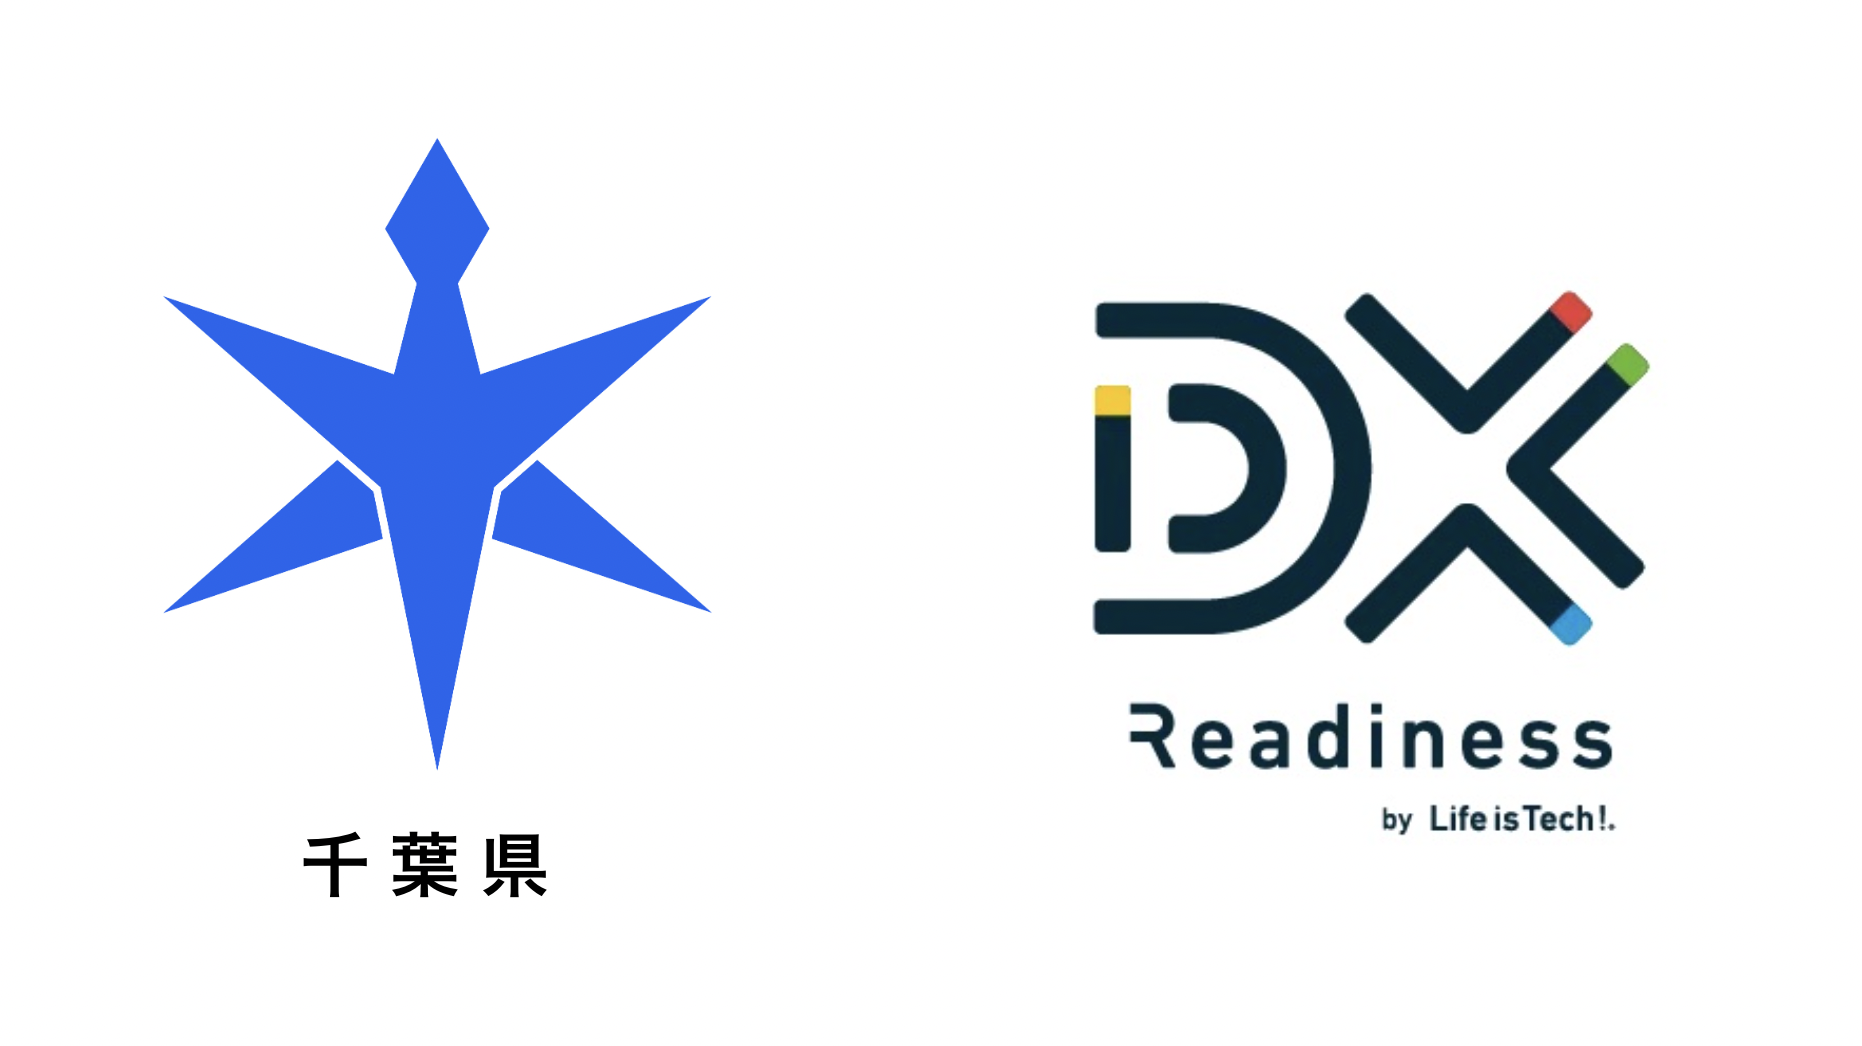 千葉県、ライフイズテックが「DXレディネス研修」を提供し自治体DX促進へ[ニュース]